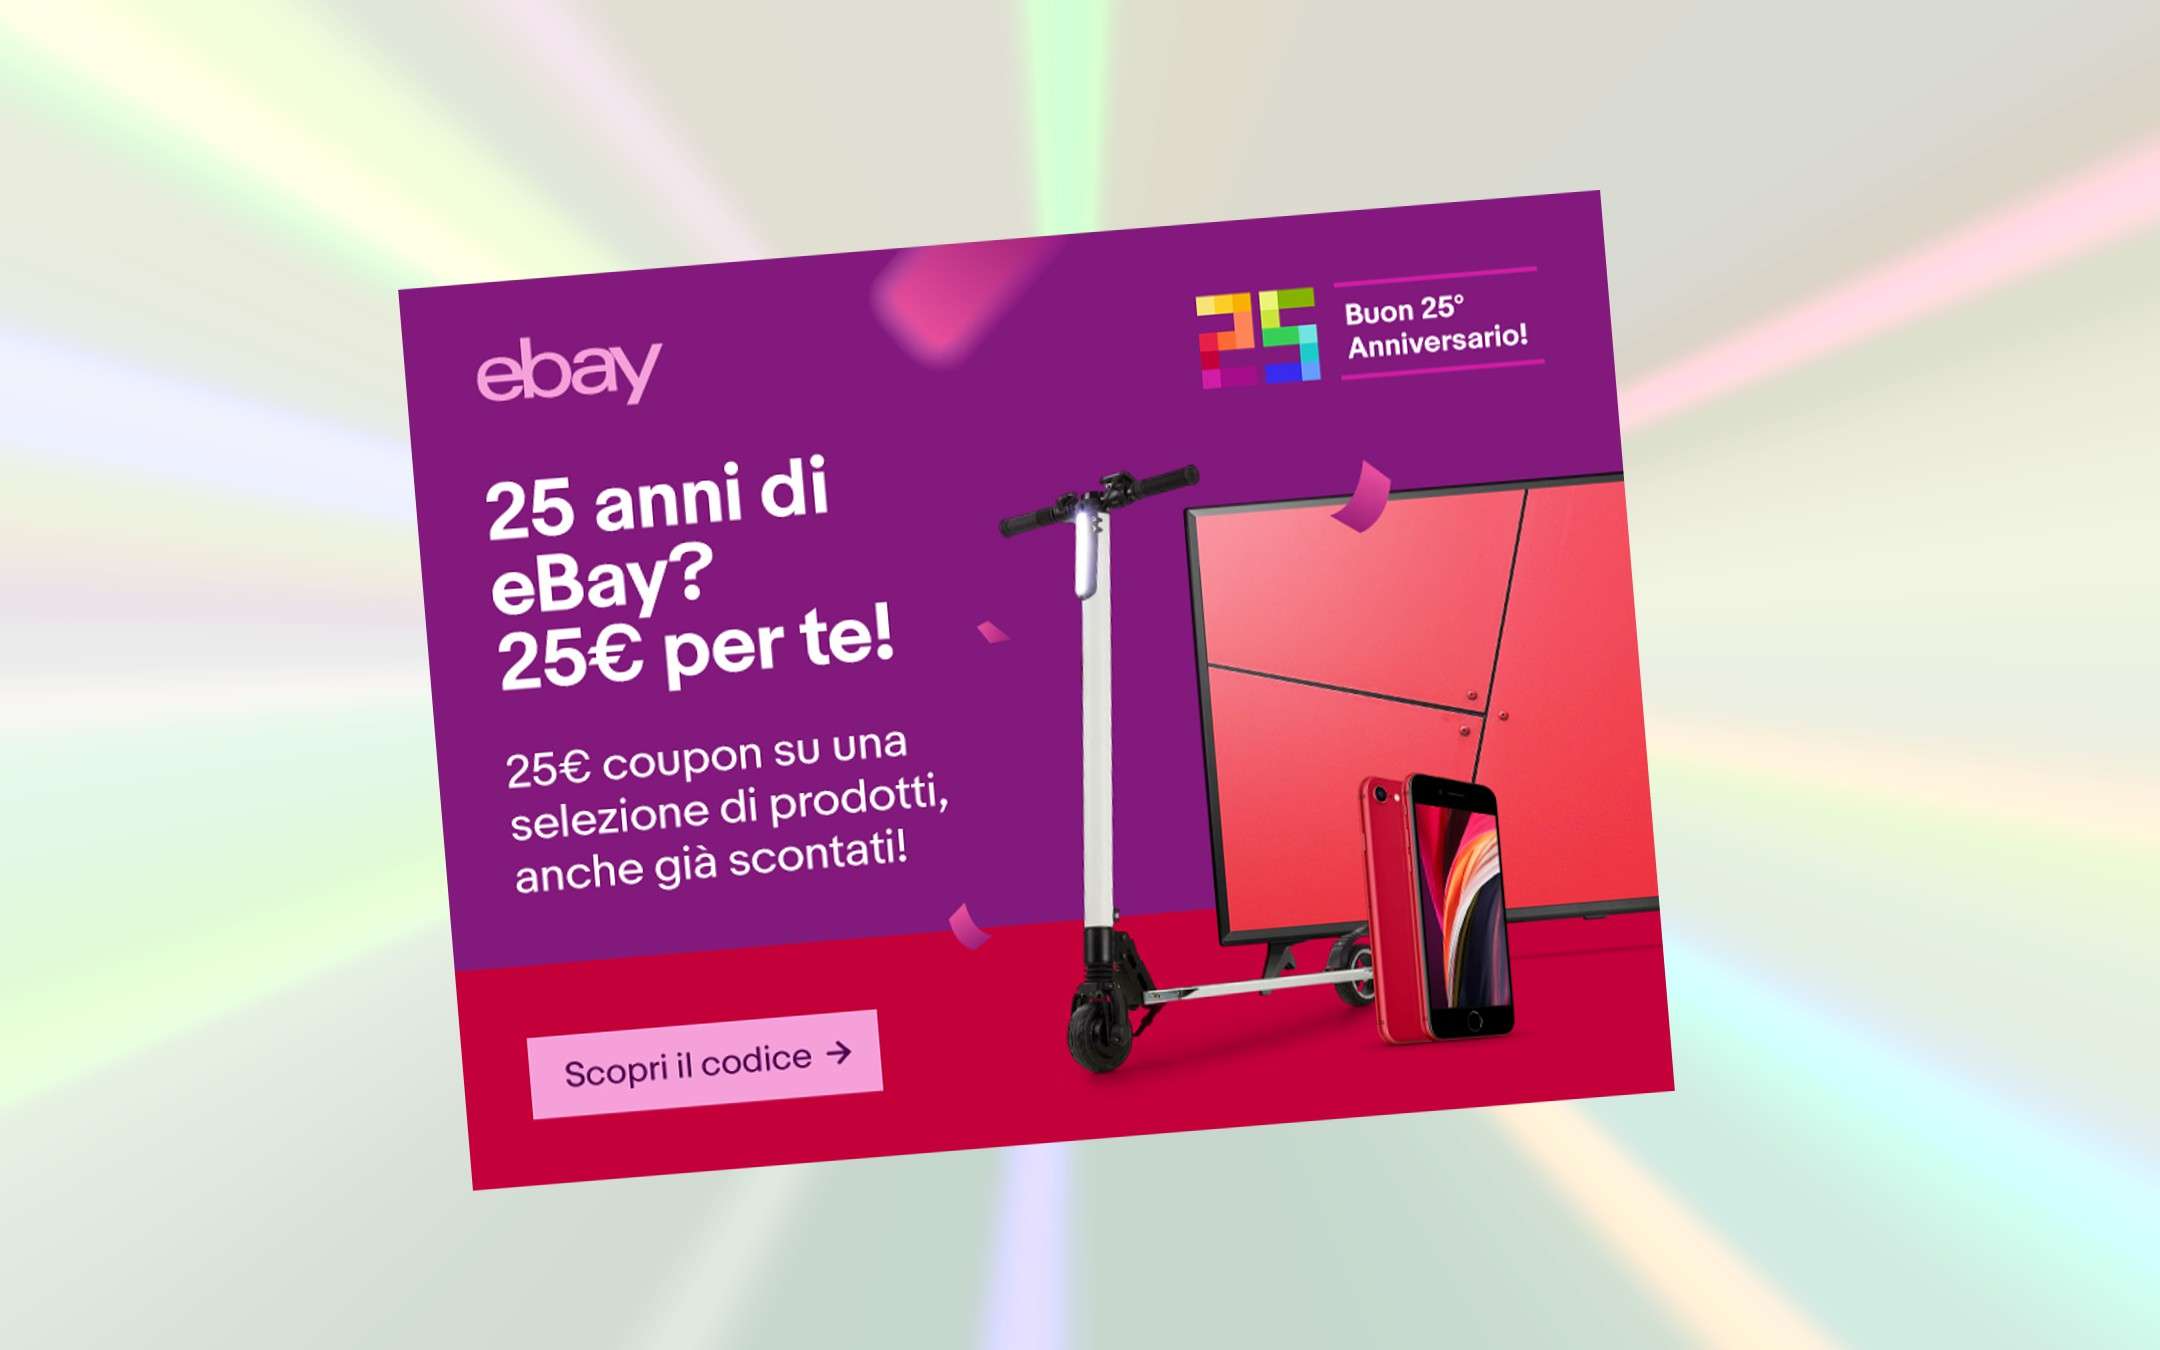 25 euro di sconto per i 25 anni di eBay